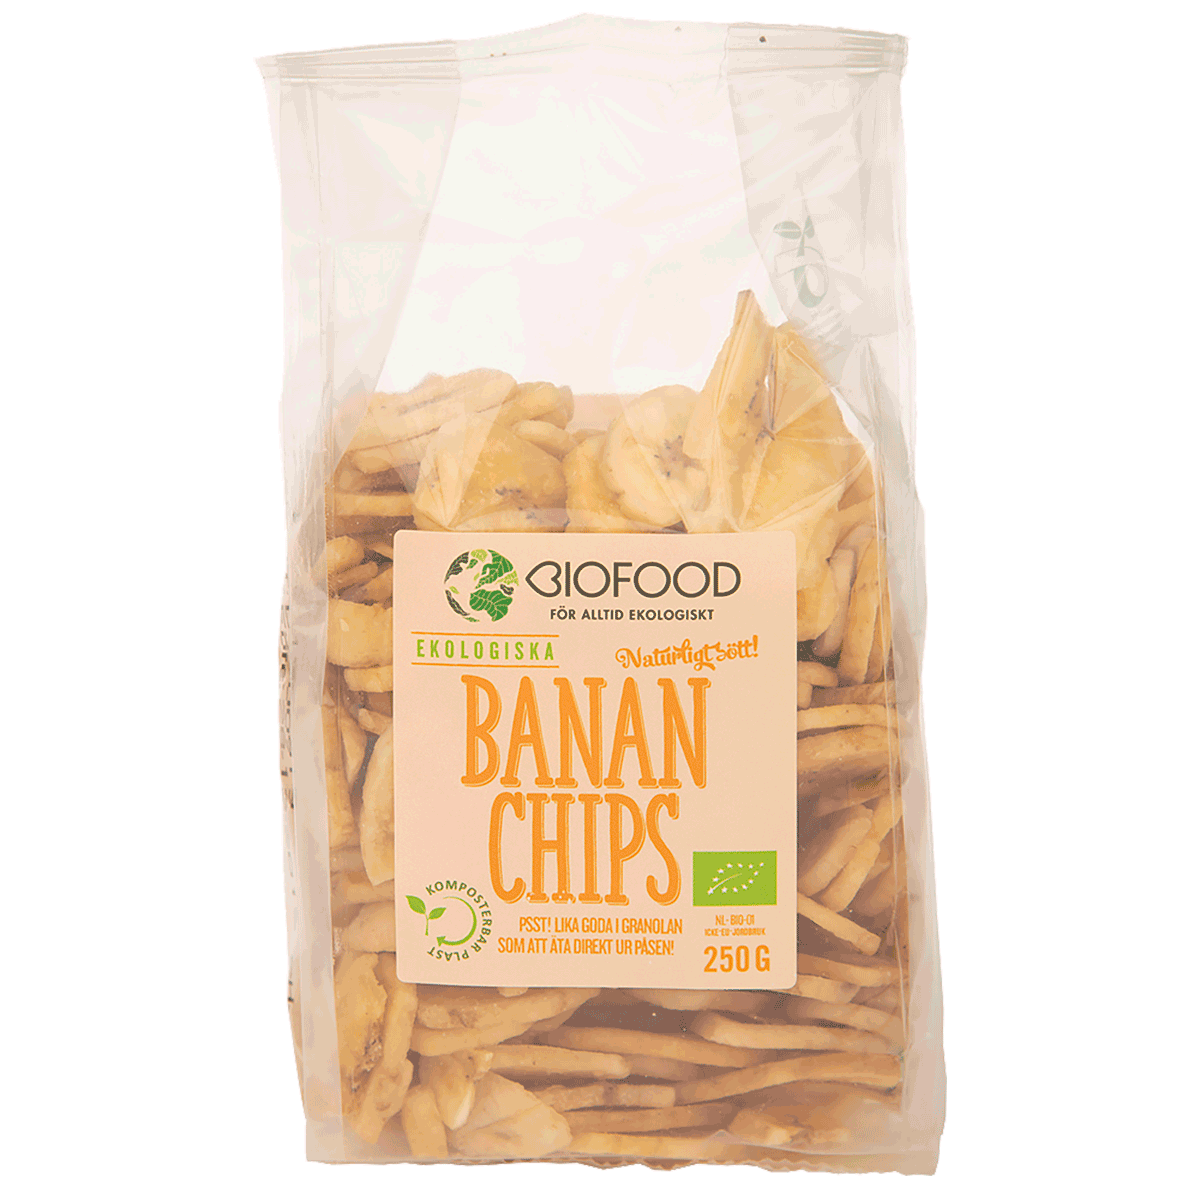 Bananenchips aus Biofood